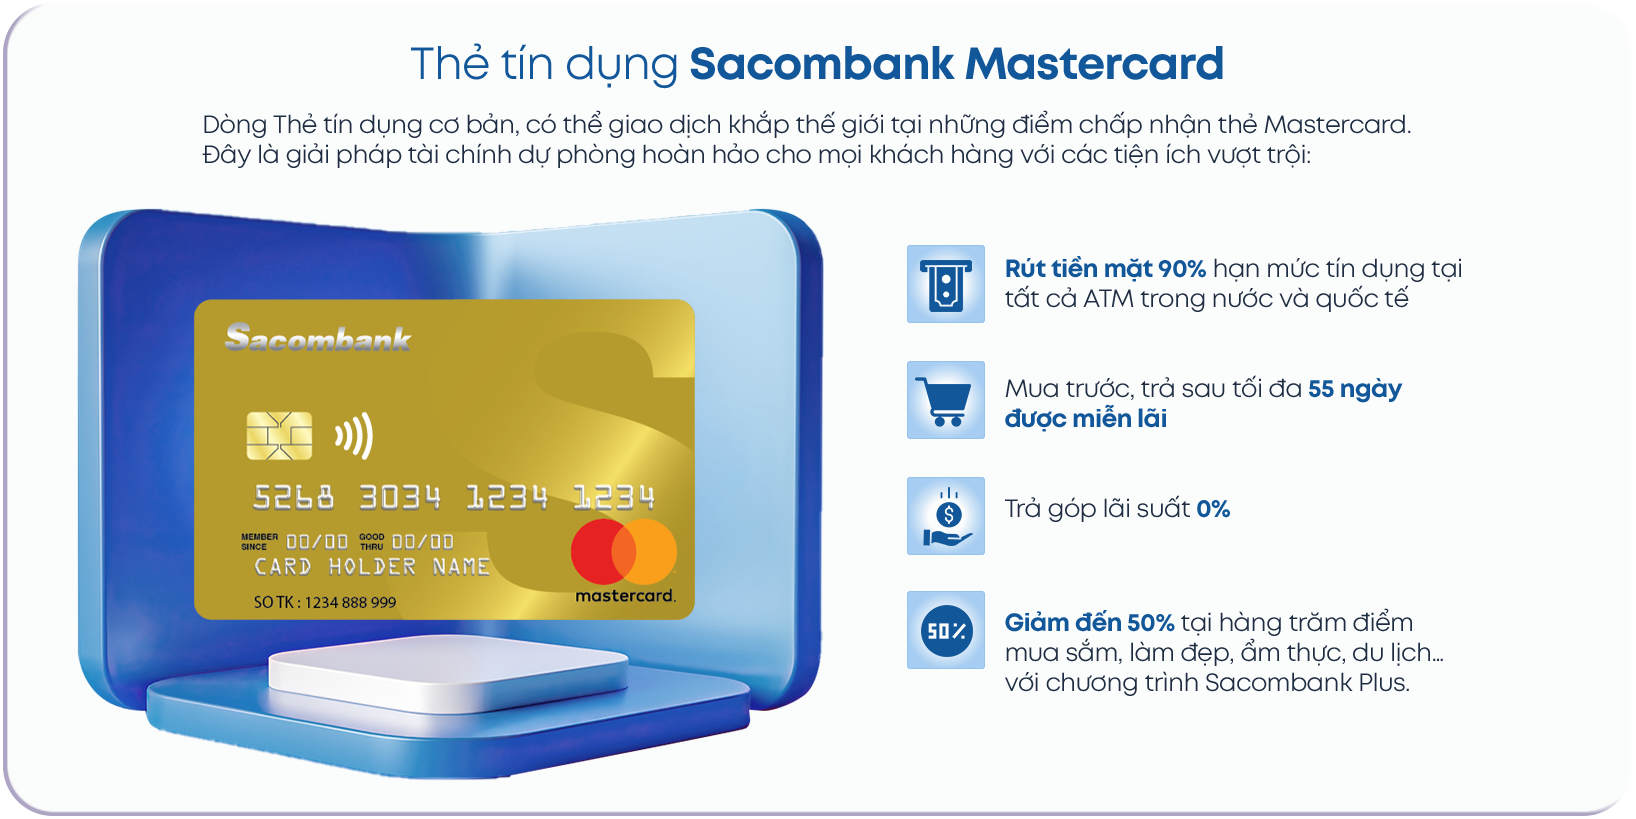 MasterCard Gold Sacombank mang tới nhiều ưu đãi hấp dẫn